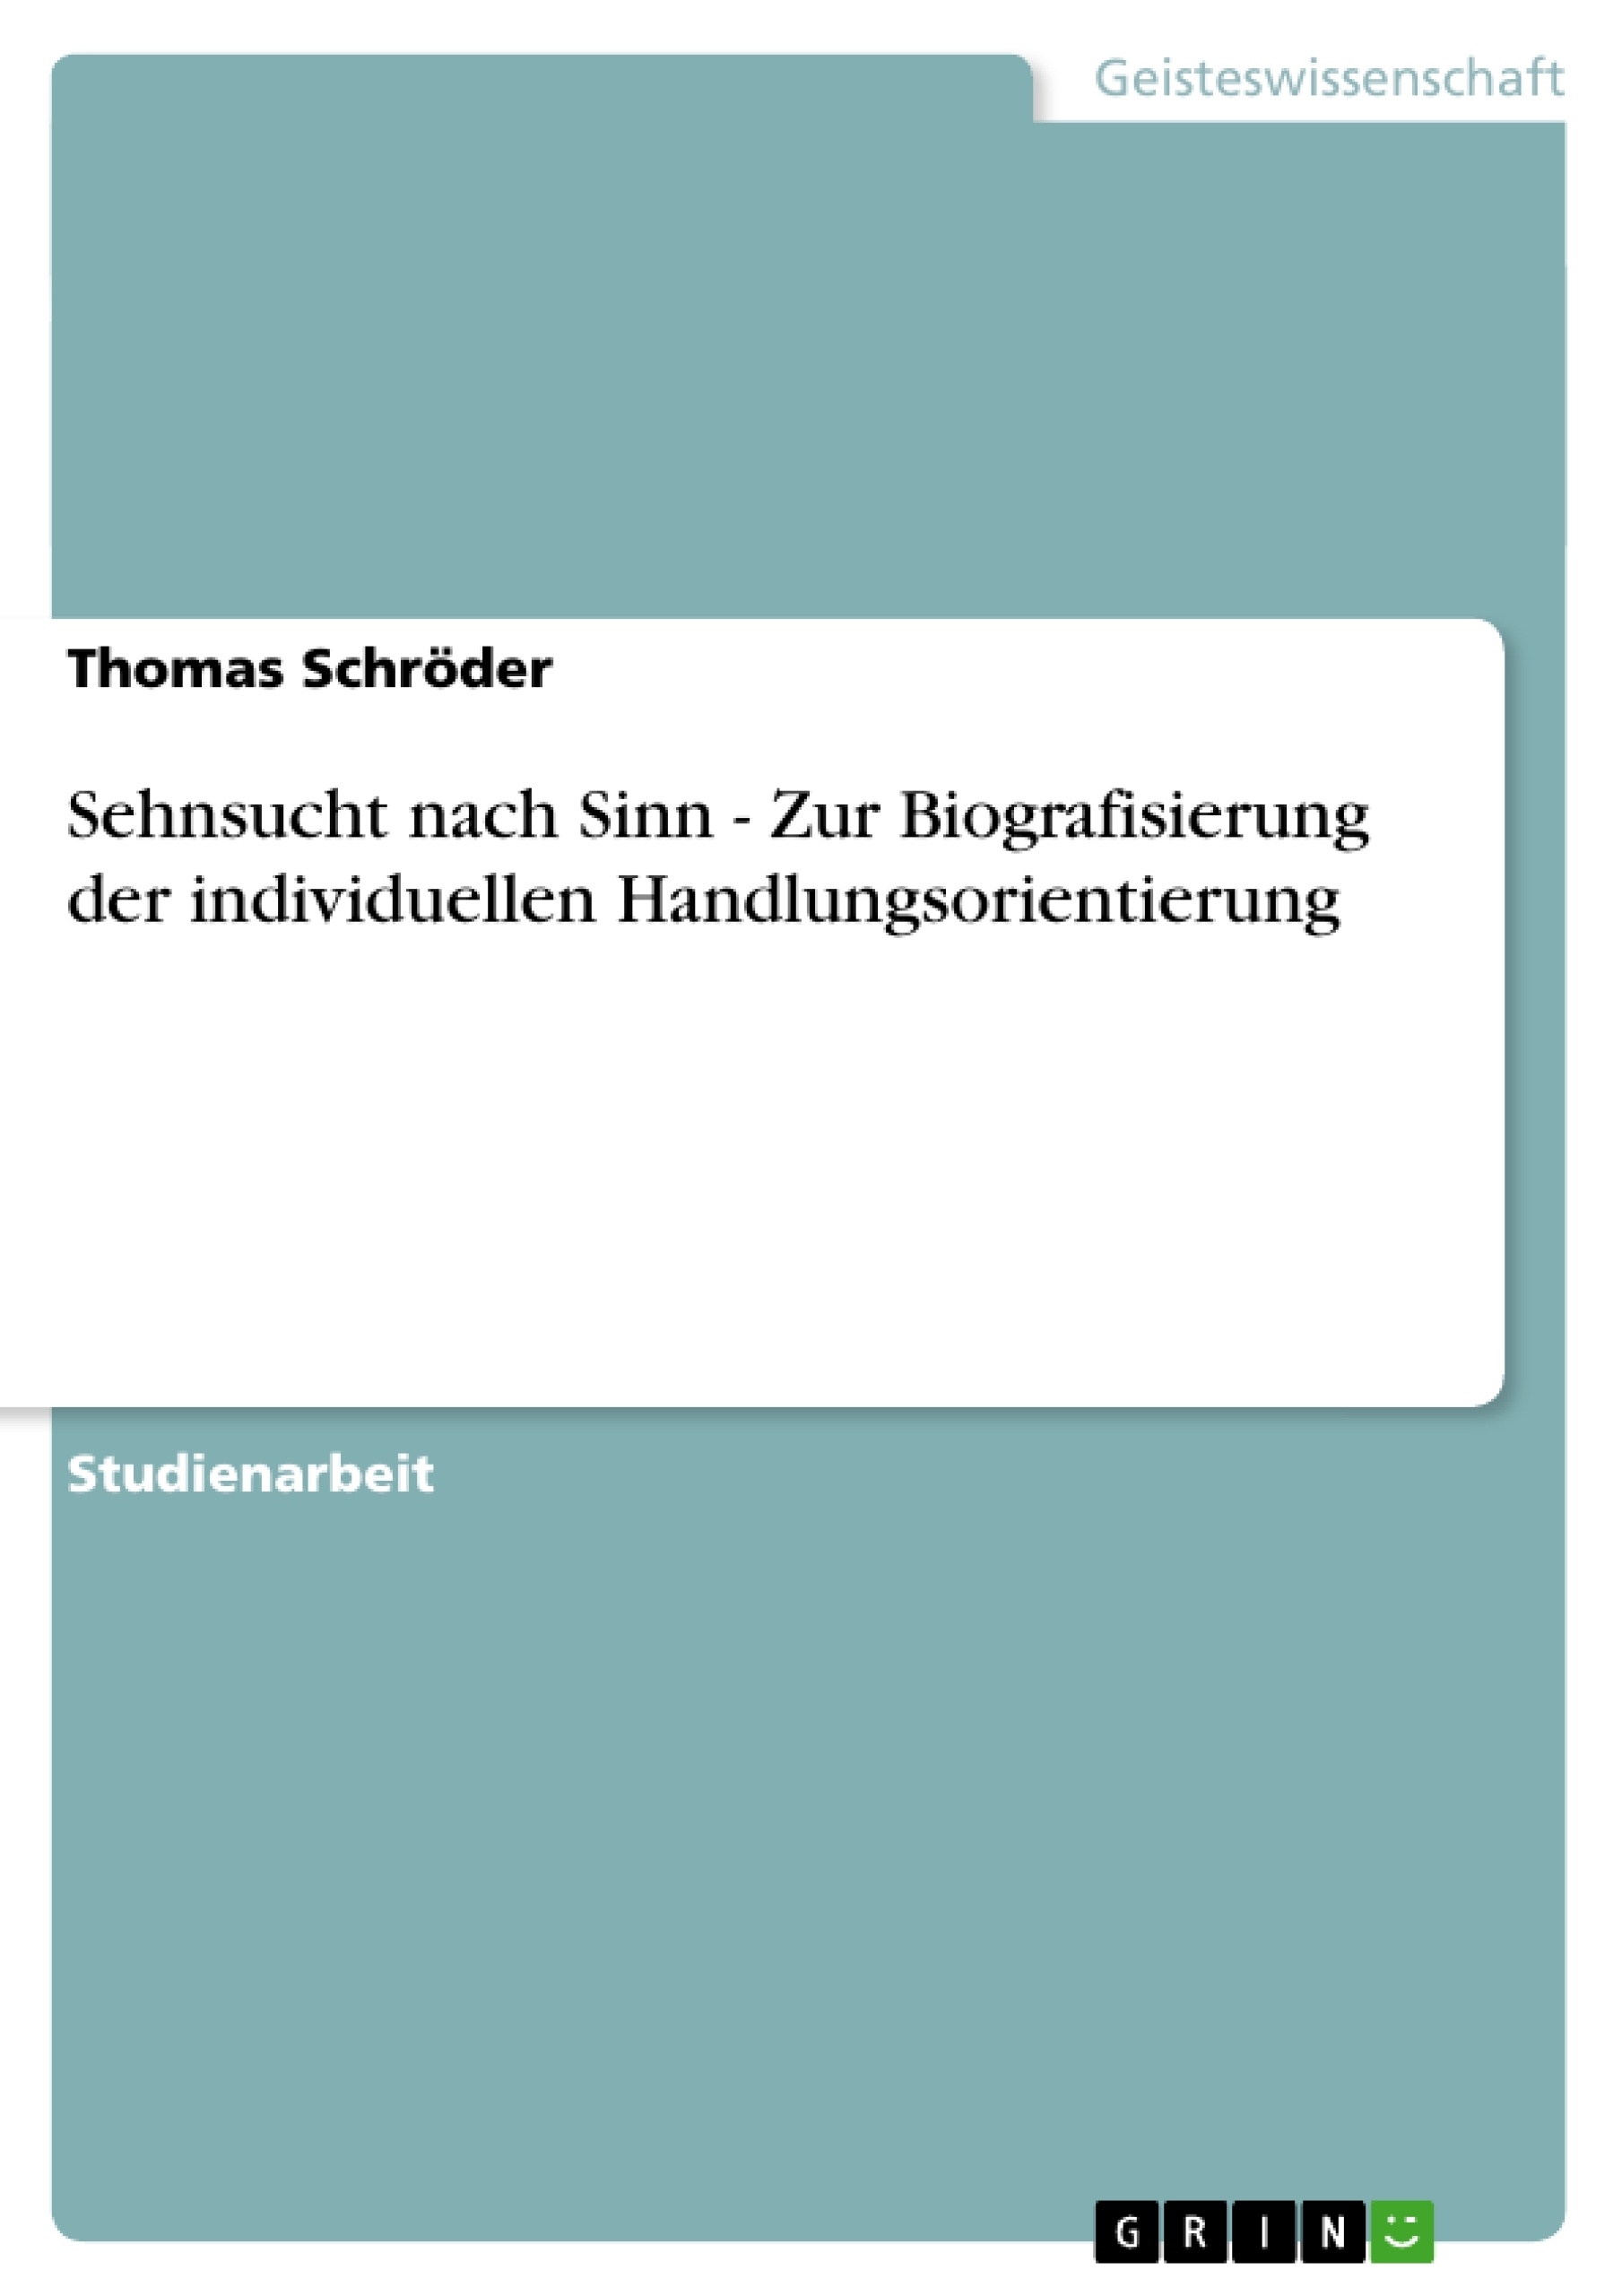 Title: Sehnsucht nach Sinn - Zur Biografisierung der individuellen Handlungsorientierung